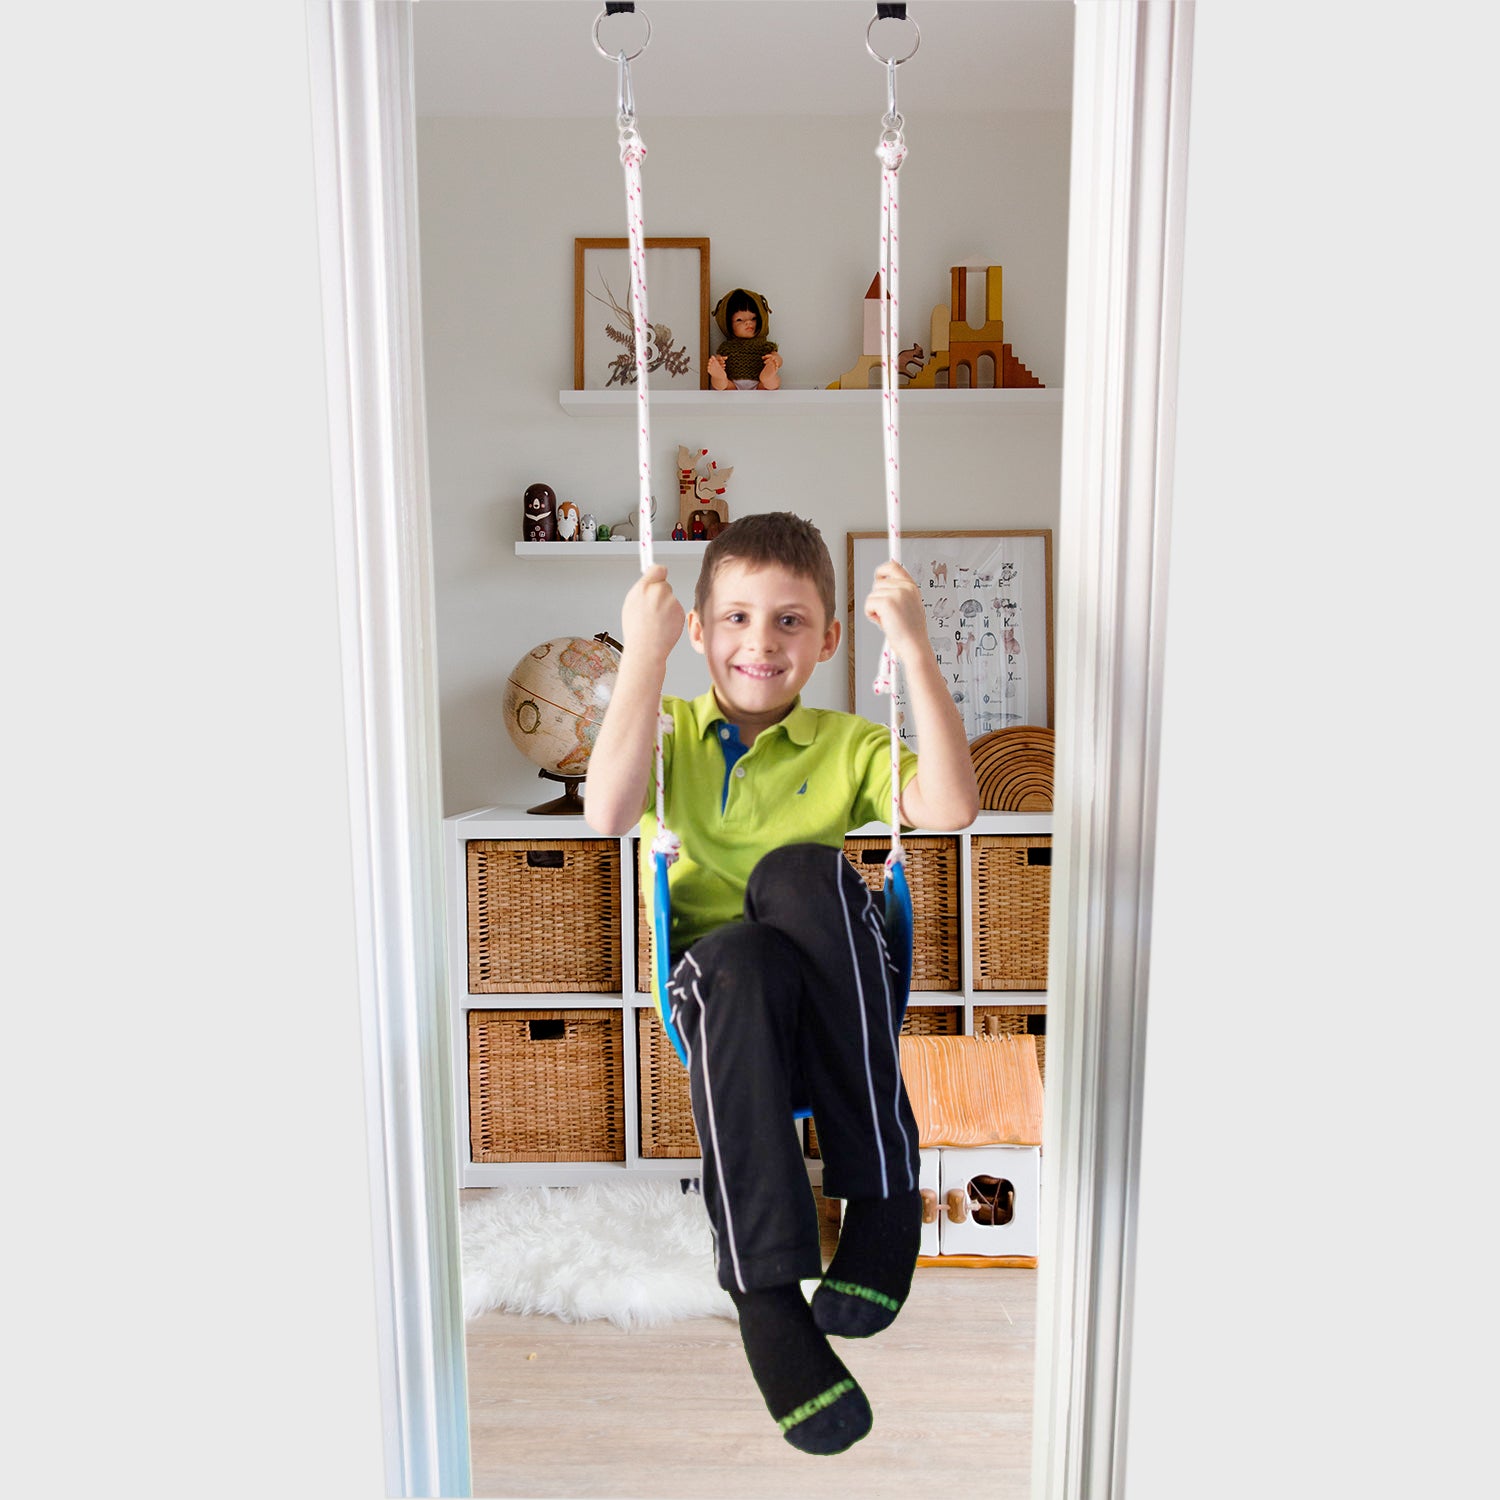 A boy is using a doorway swing